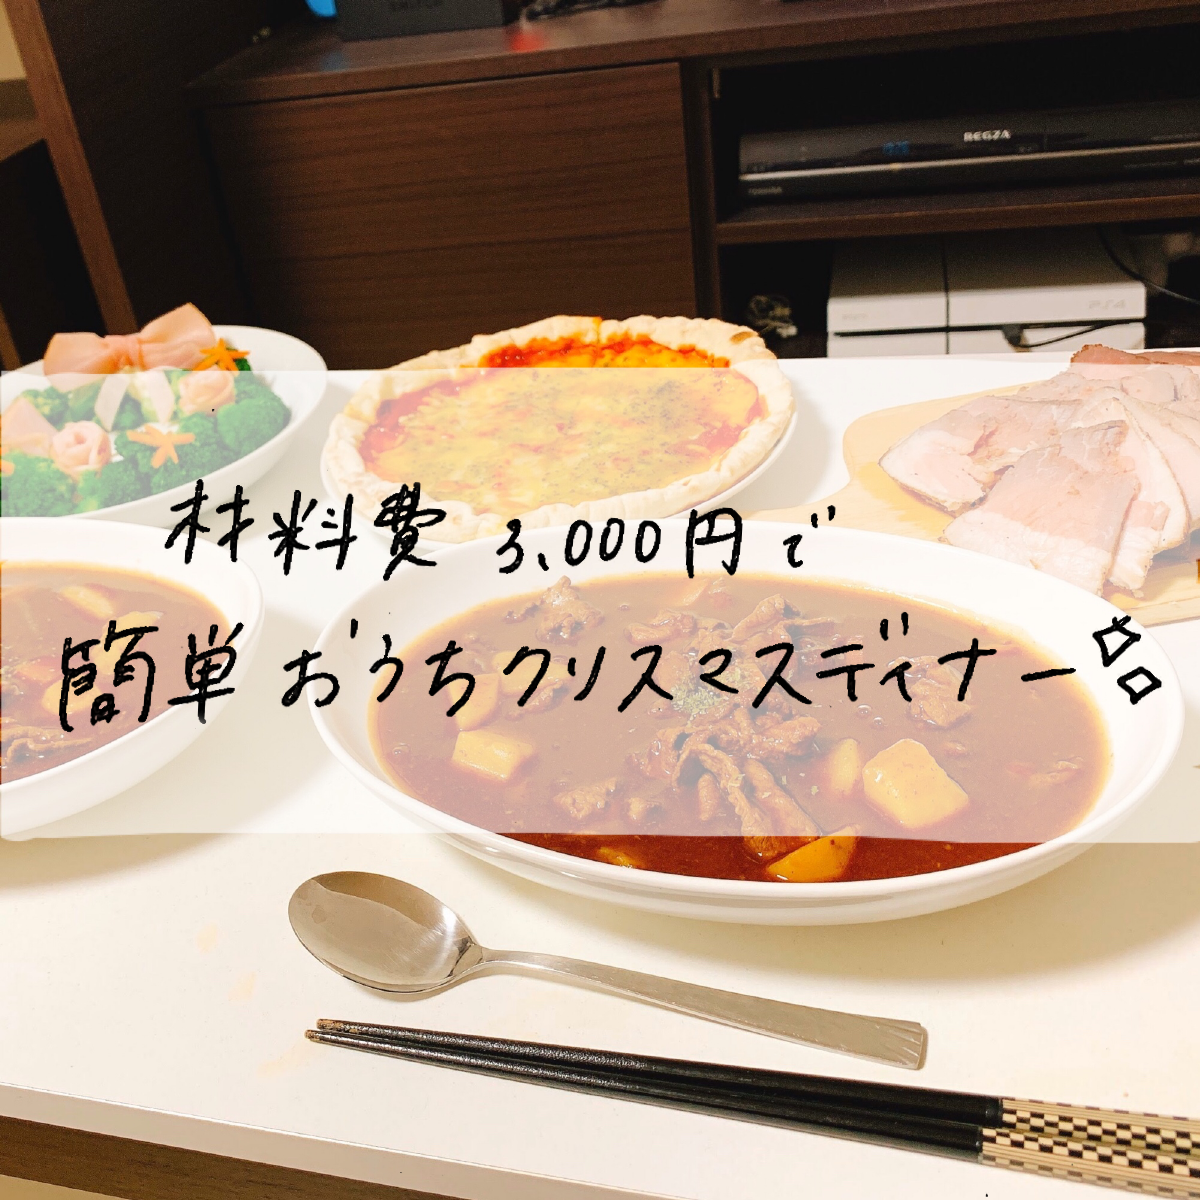 材料費3000円 お家で簡単クリスマスディナー Mii 楽しい節約貯金生活